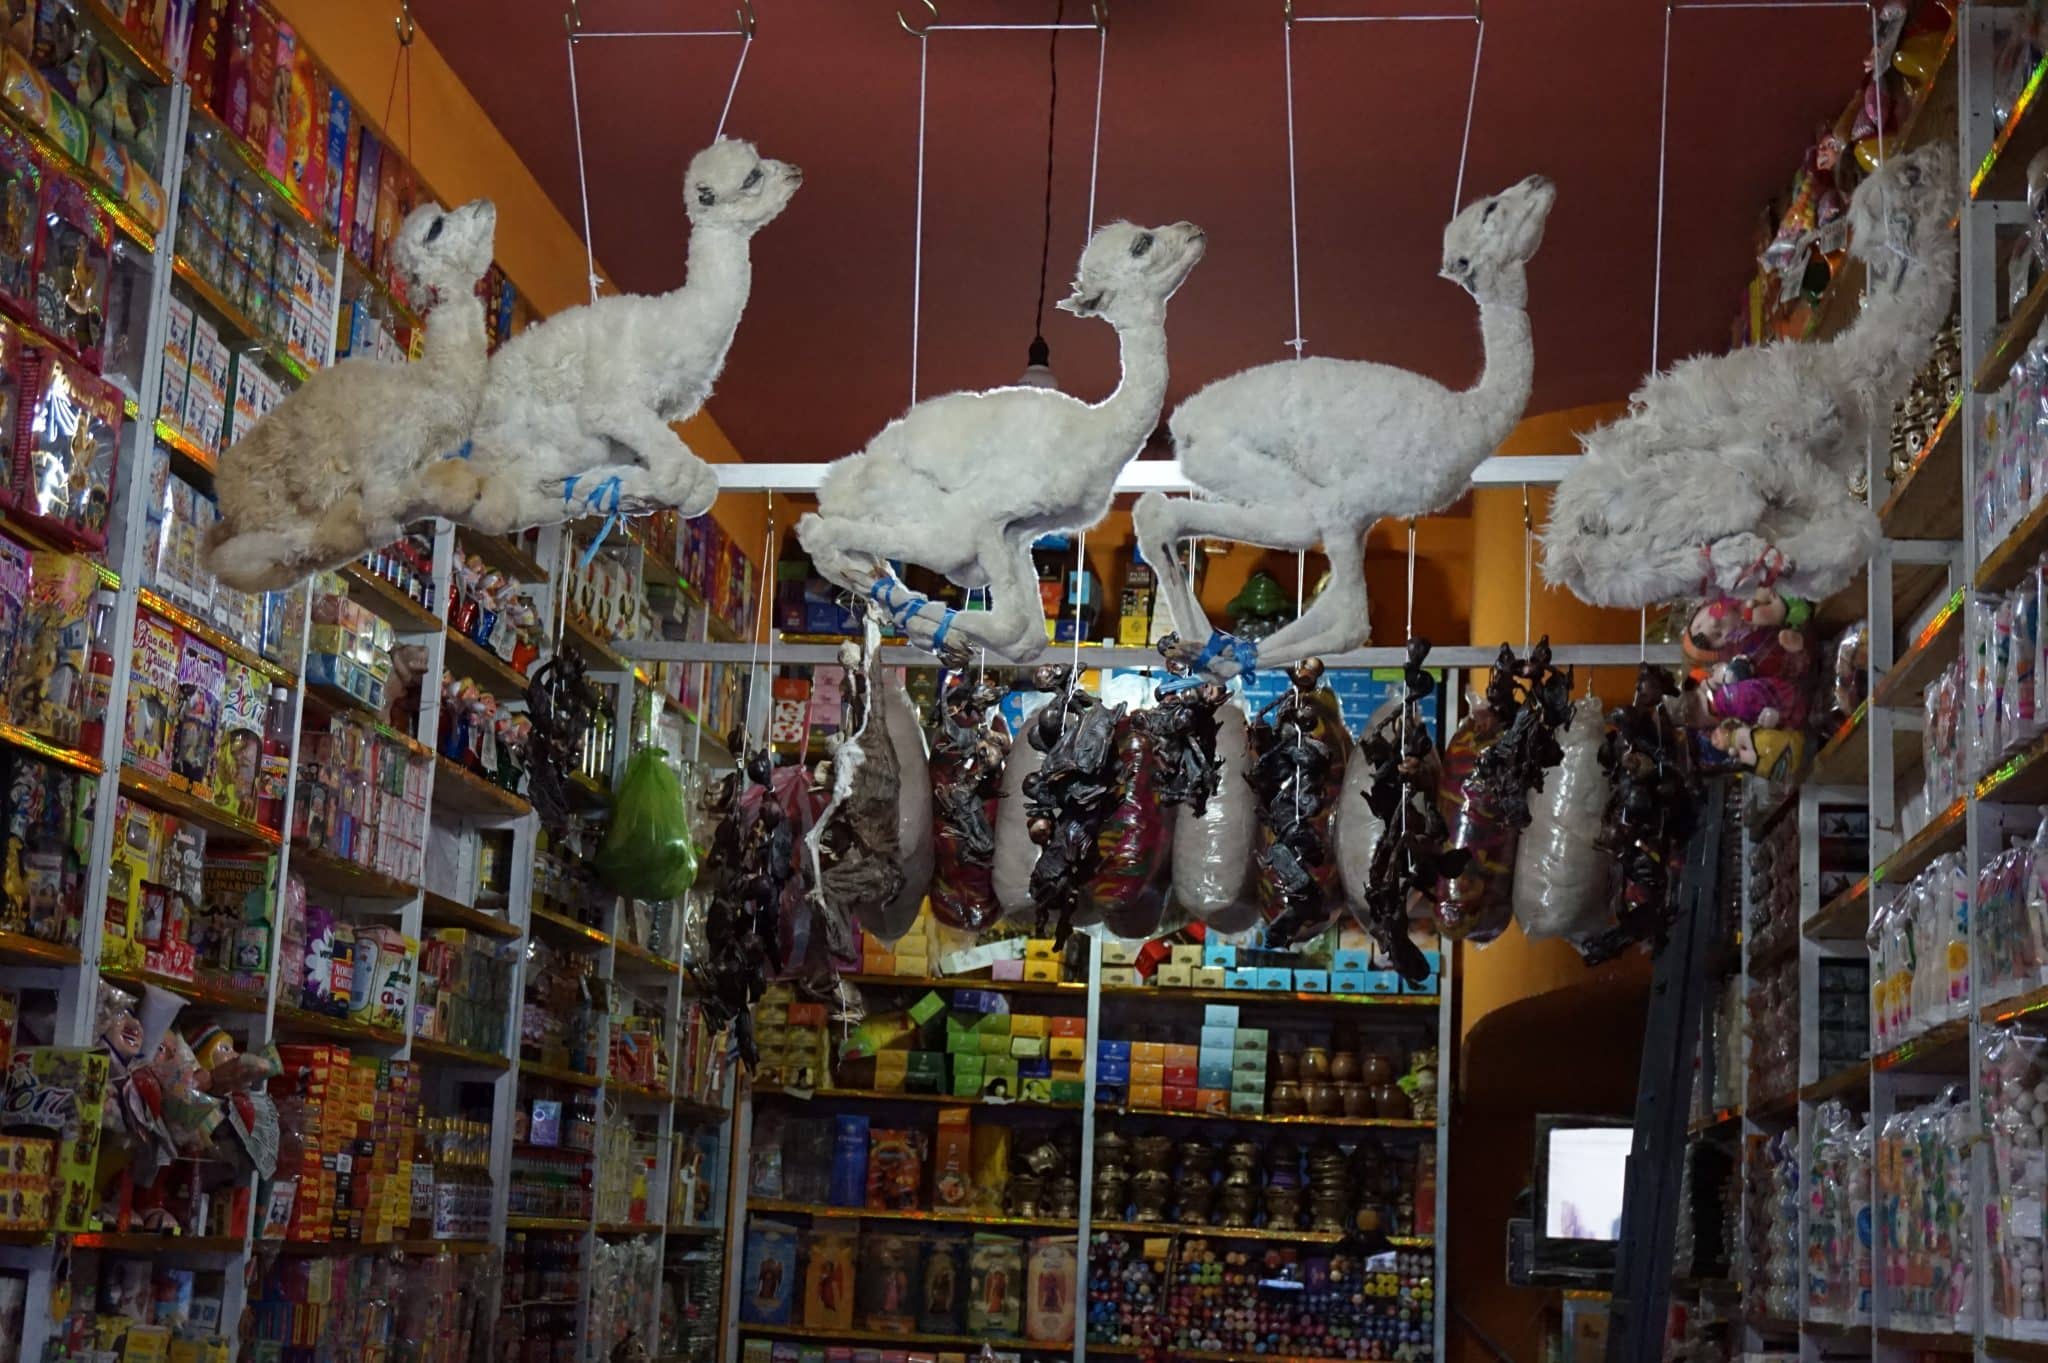 Foetus de lama séché au marché aux sorcières de la Paz en Bolivie dans notre article Voyage en Bolivie : que voir et que faire en Bolivie en 5 expériences incroyables #Bolivie #Voyage #AmériqueduSud #IncontournablesBolivie #QueVoirBolivie